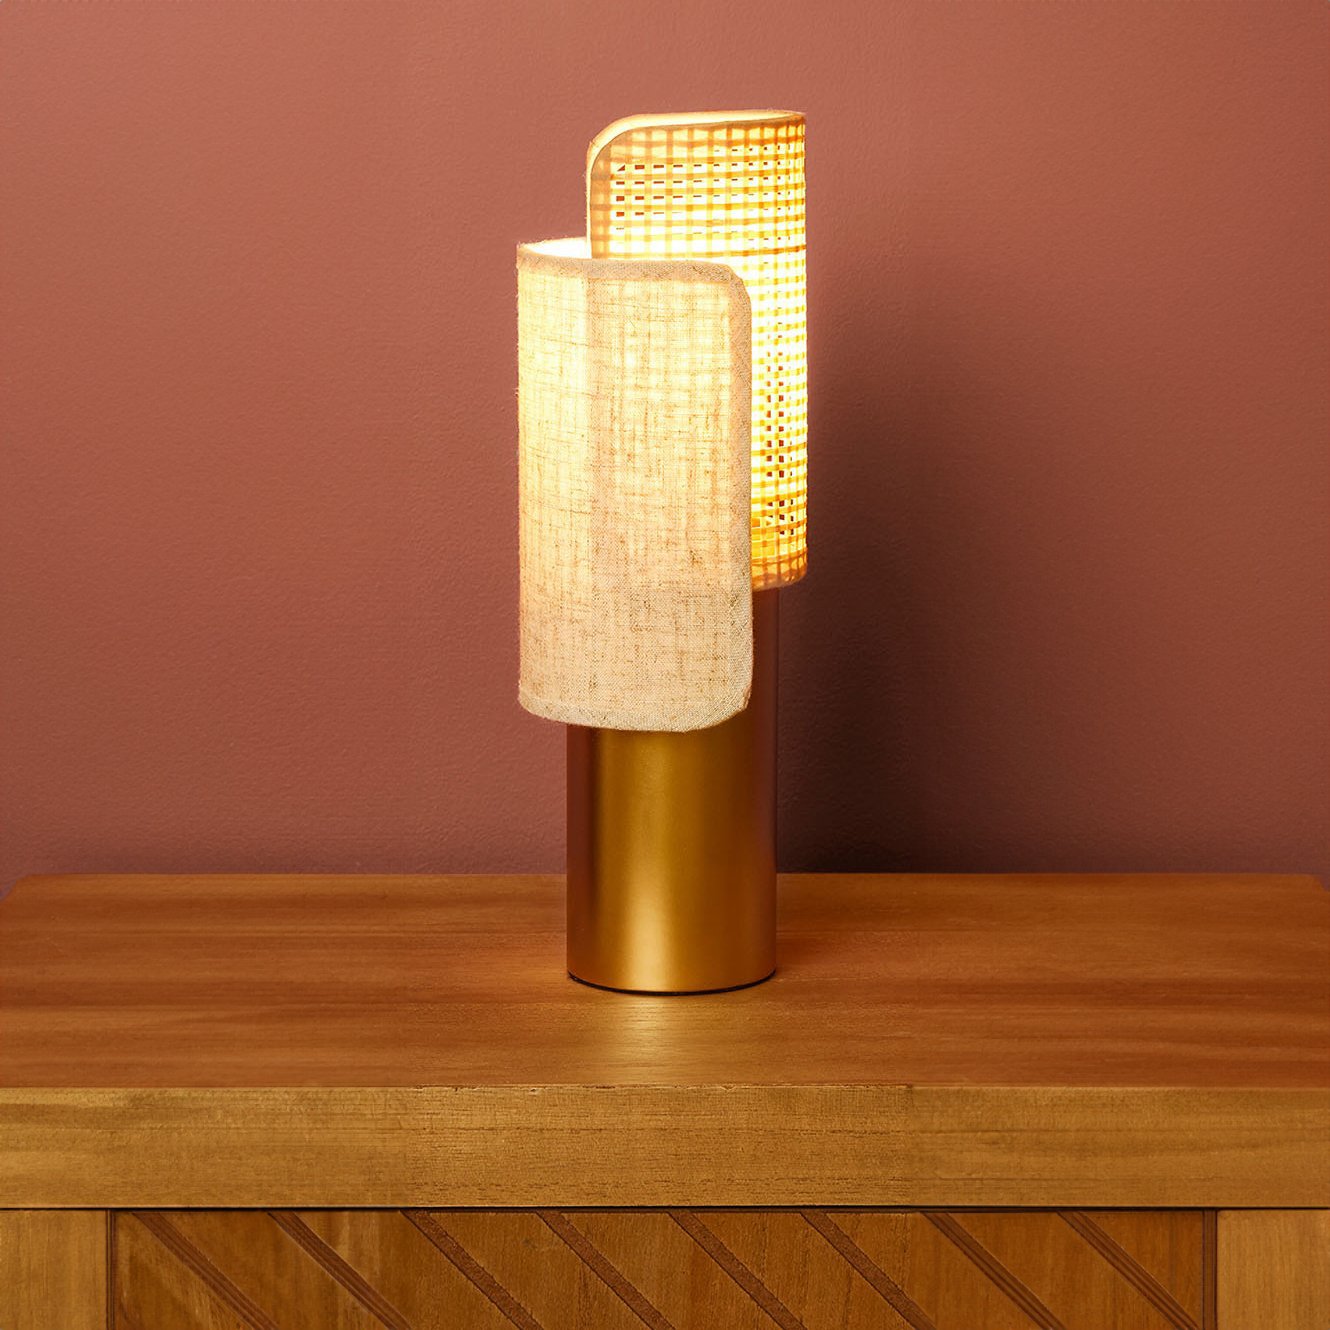 LAMP BLOOM : une lampe unique en son genre - Mag Decofinder